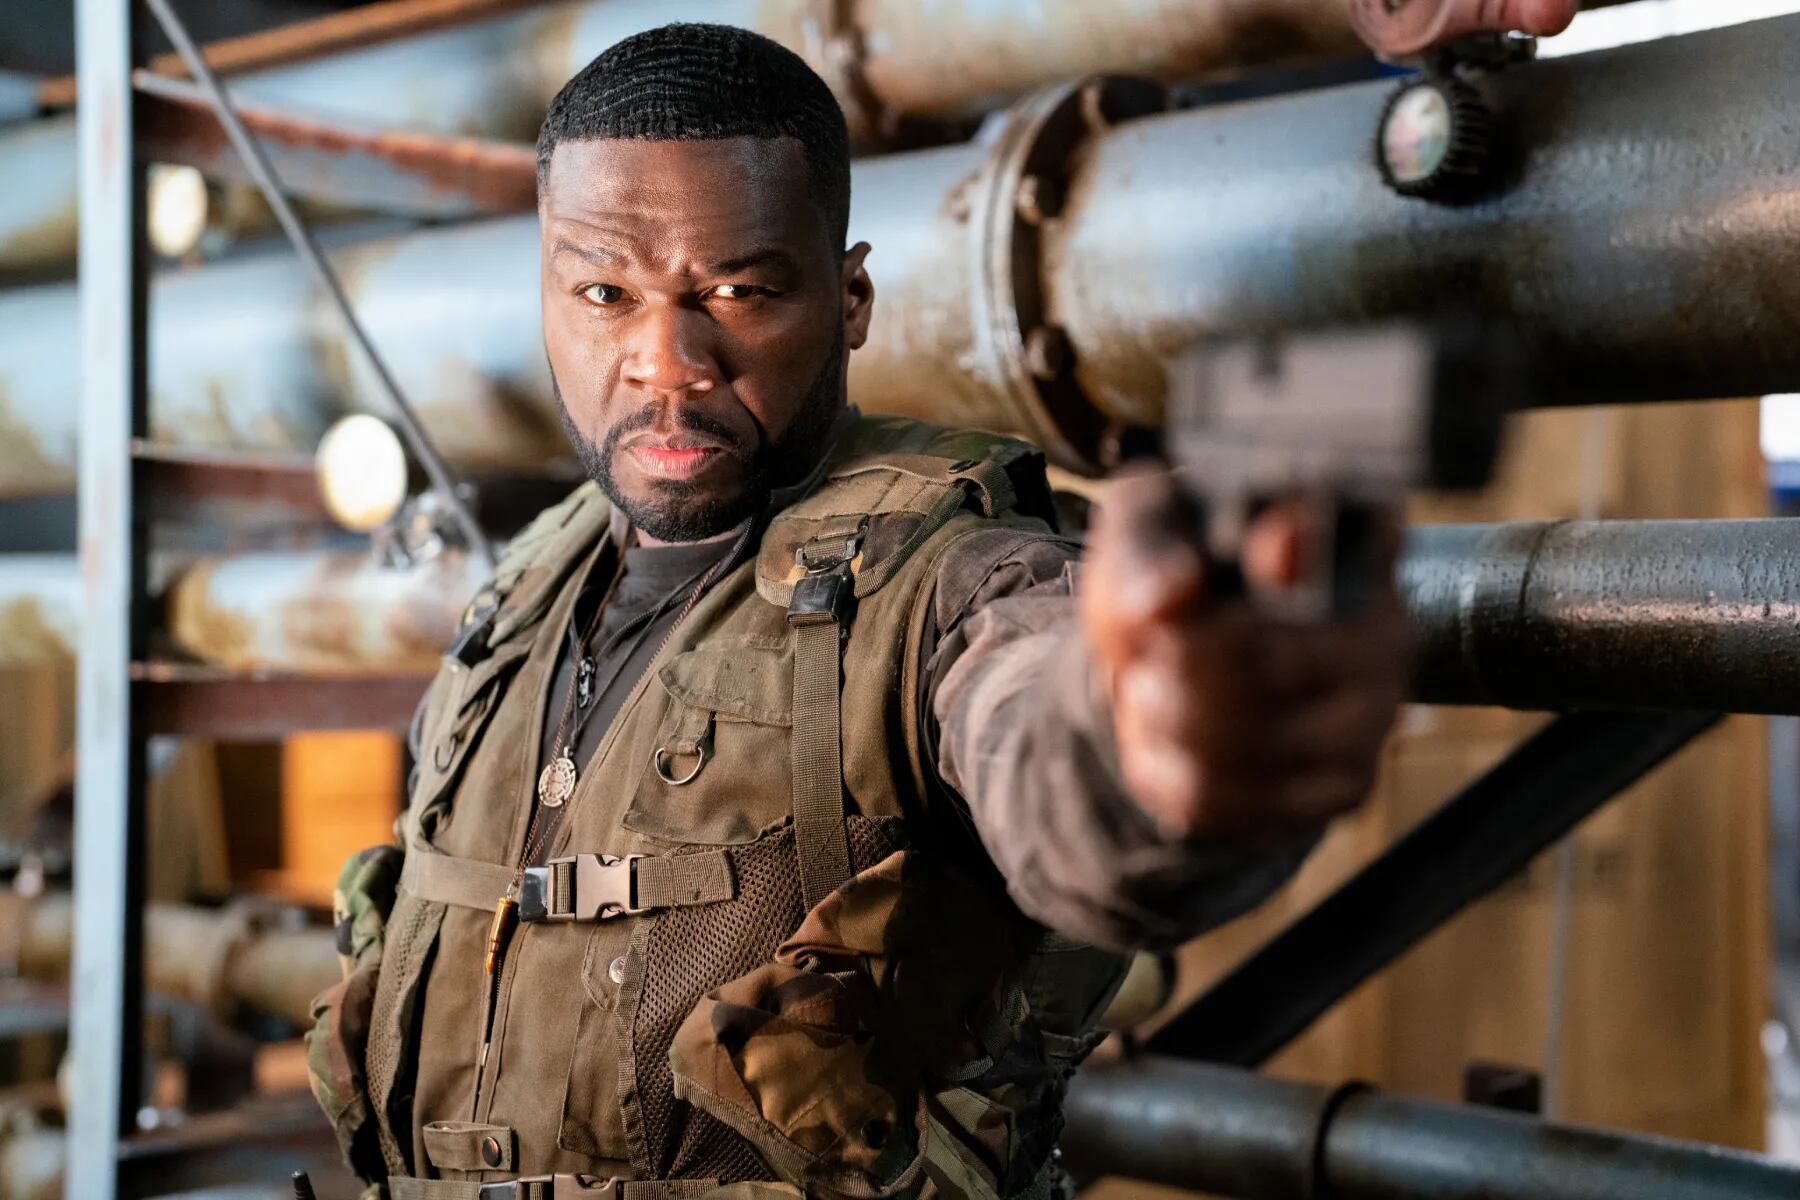 El rapero 50 Cent, quien ha estado lejos de los reflectores en los últimos años, vuelve a primera plana como uno de los mercenarios de élite. Foto: EX4 Productions